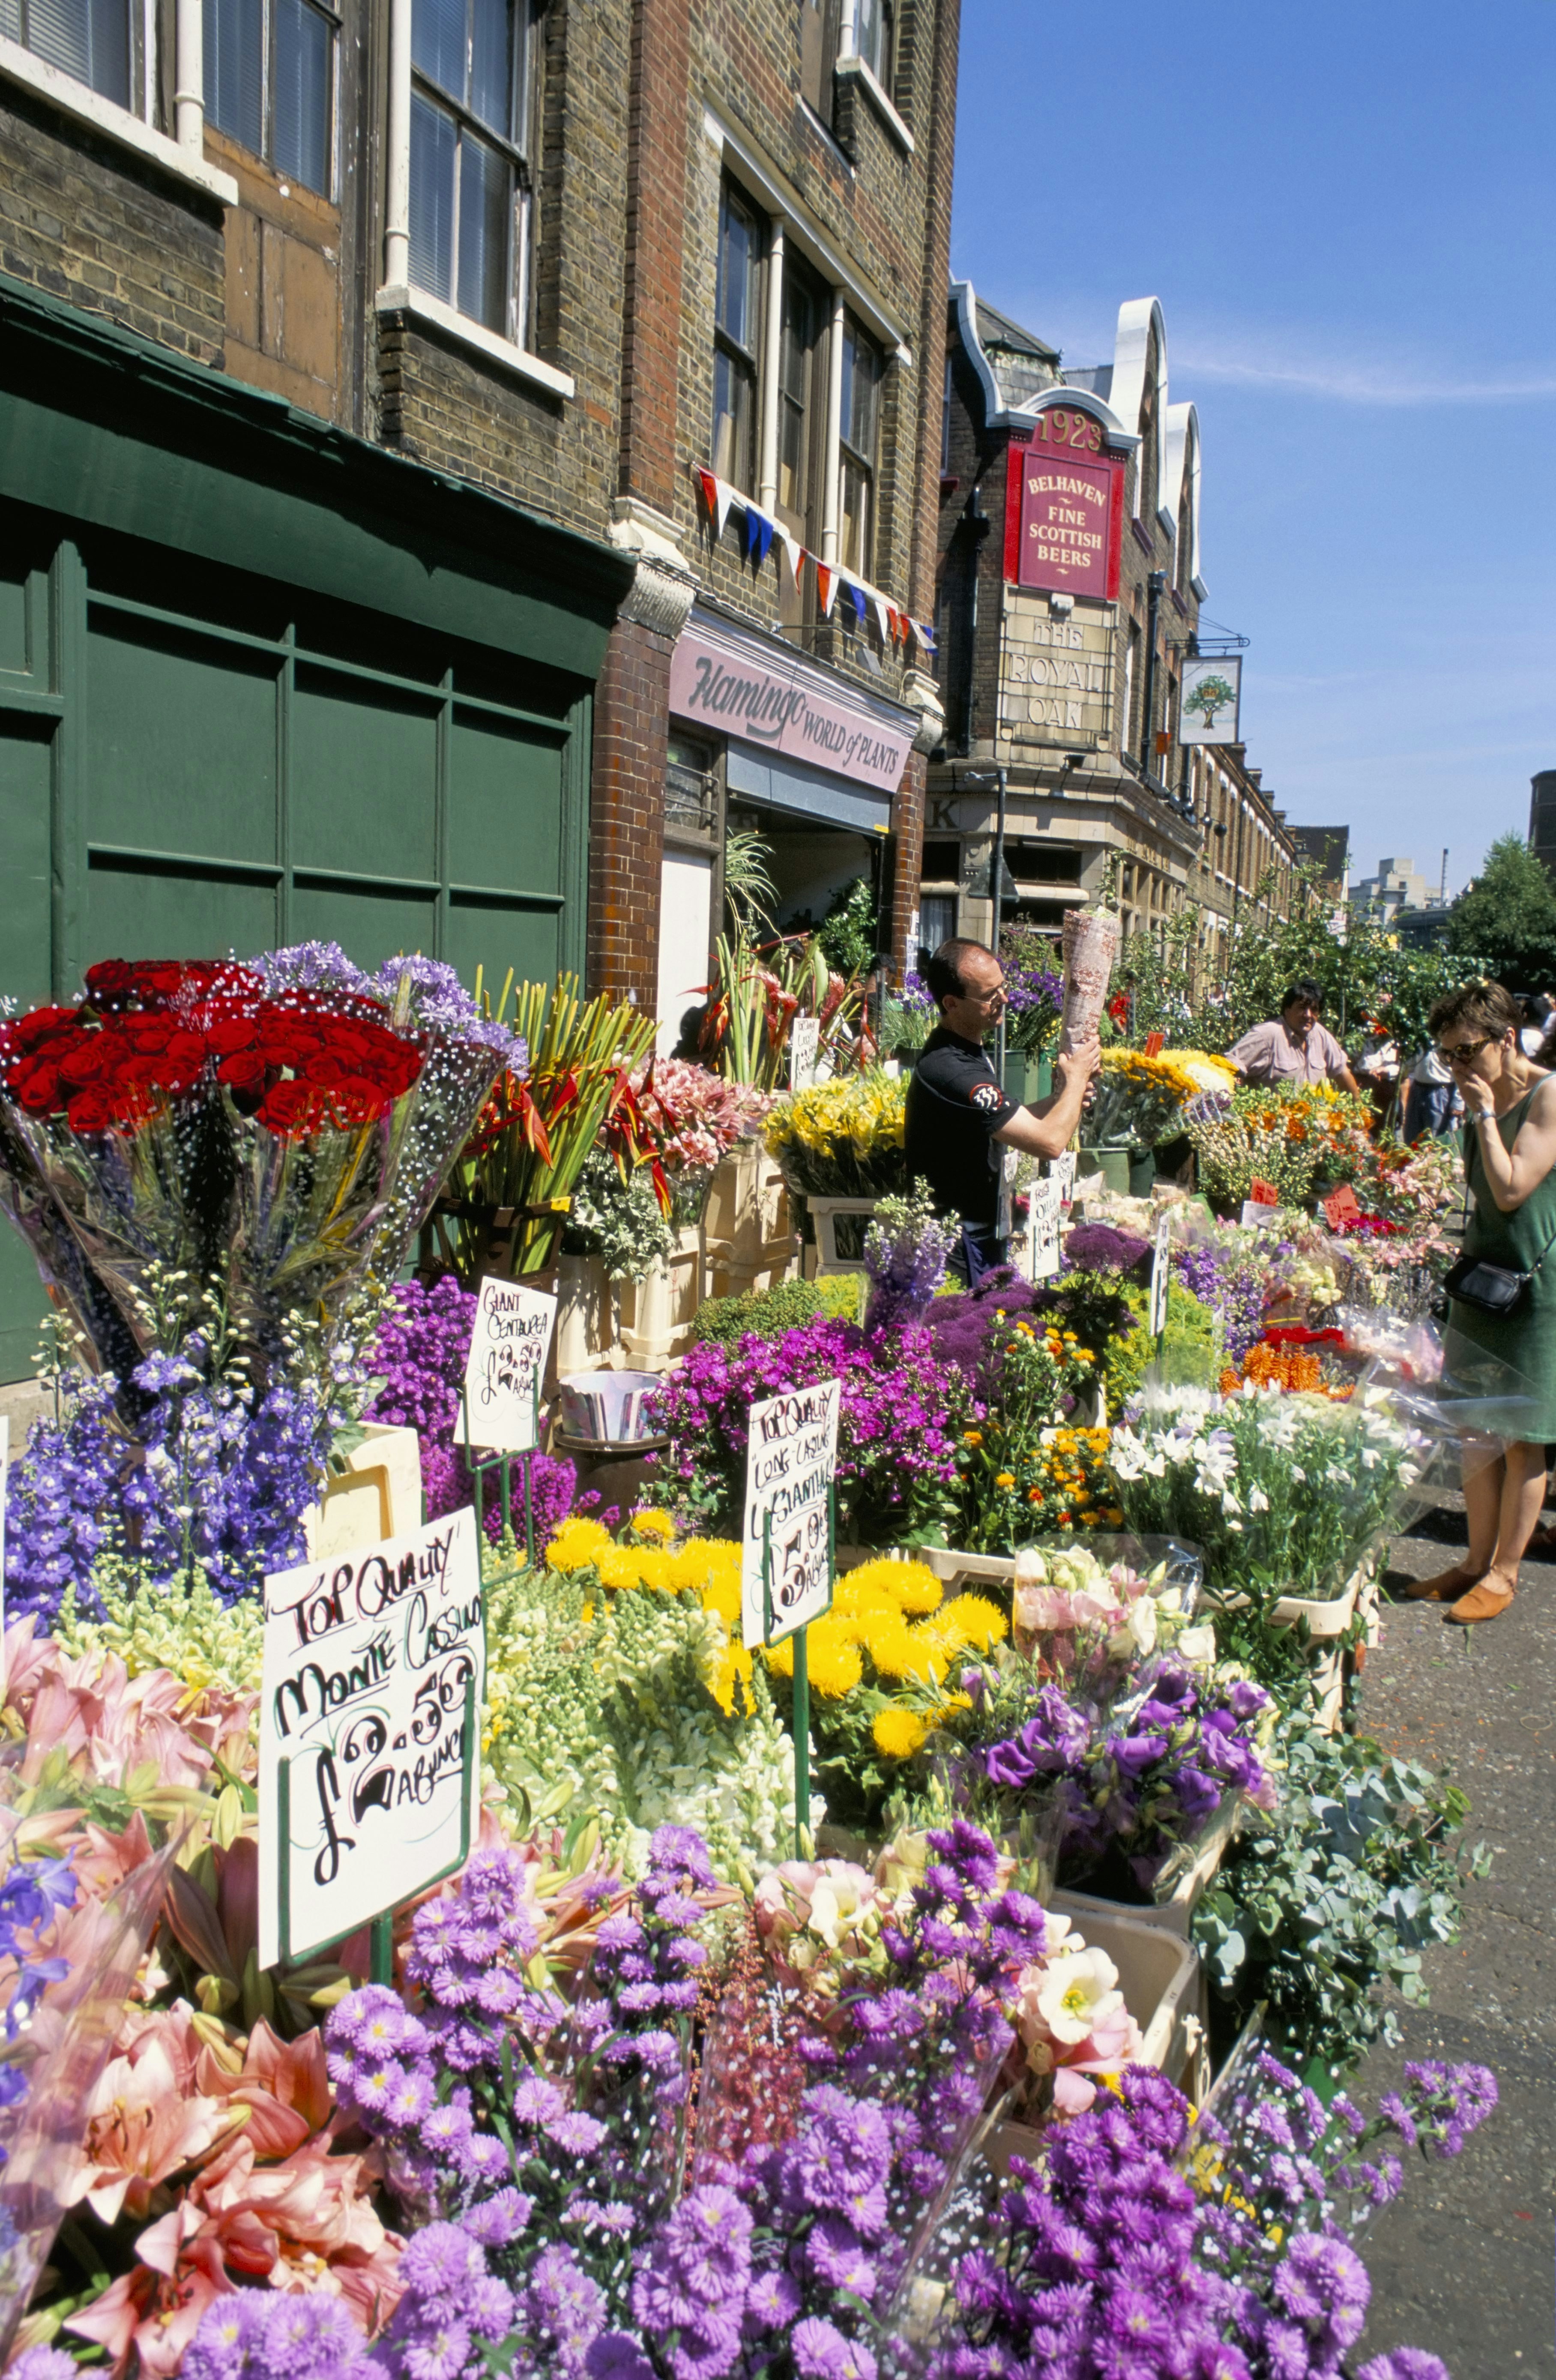 Sunday flower market, Columbia Road, London, England, United Kingdom, Europe